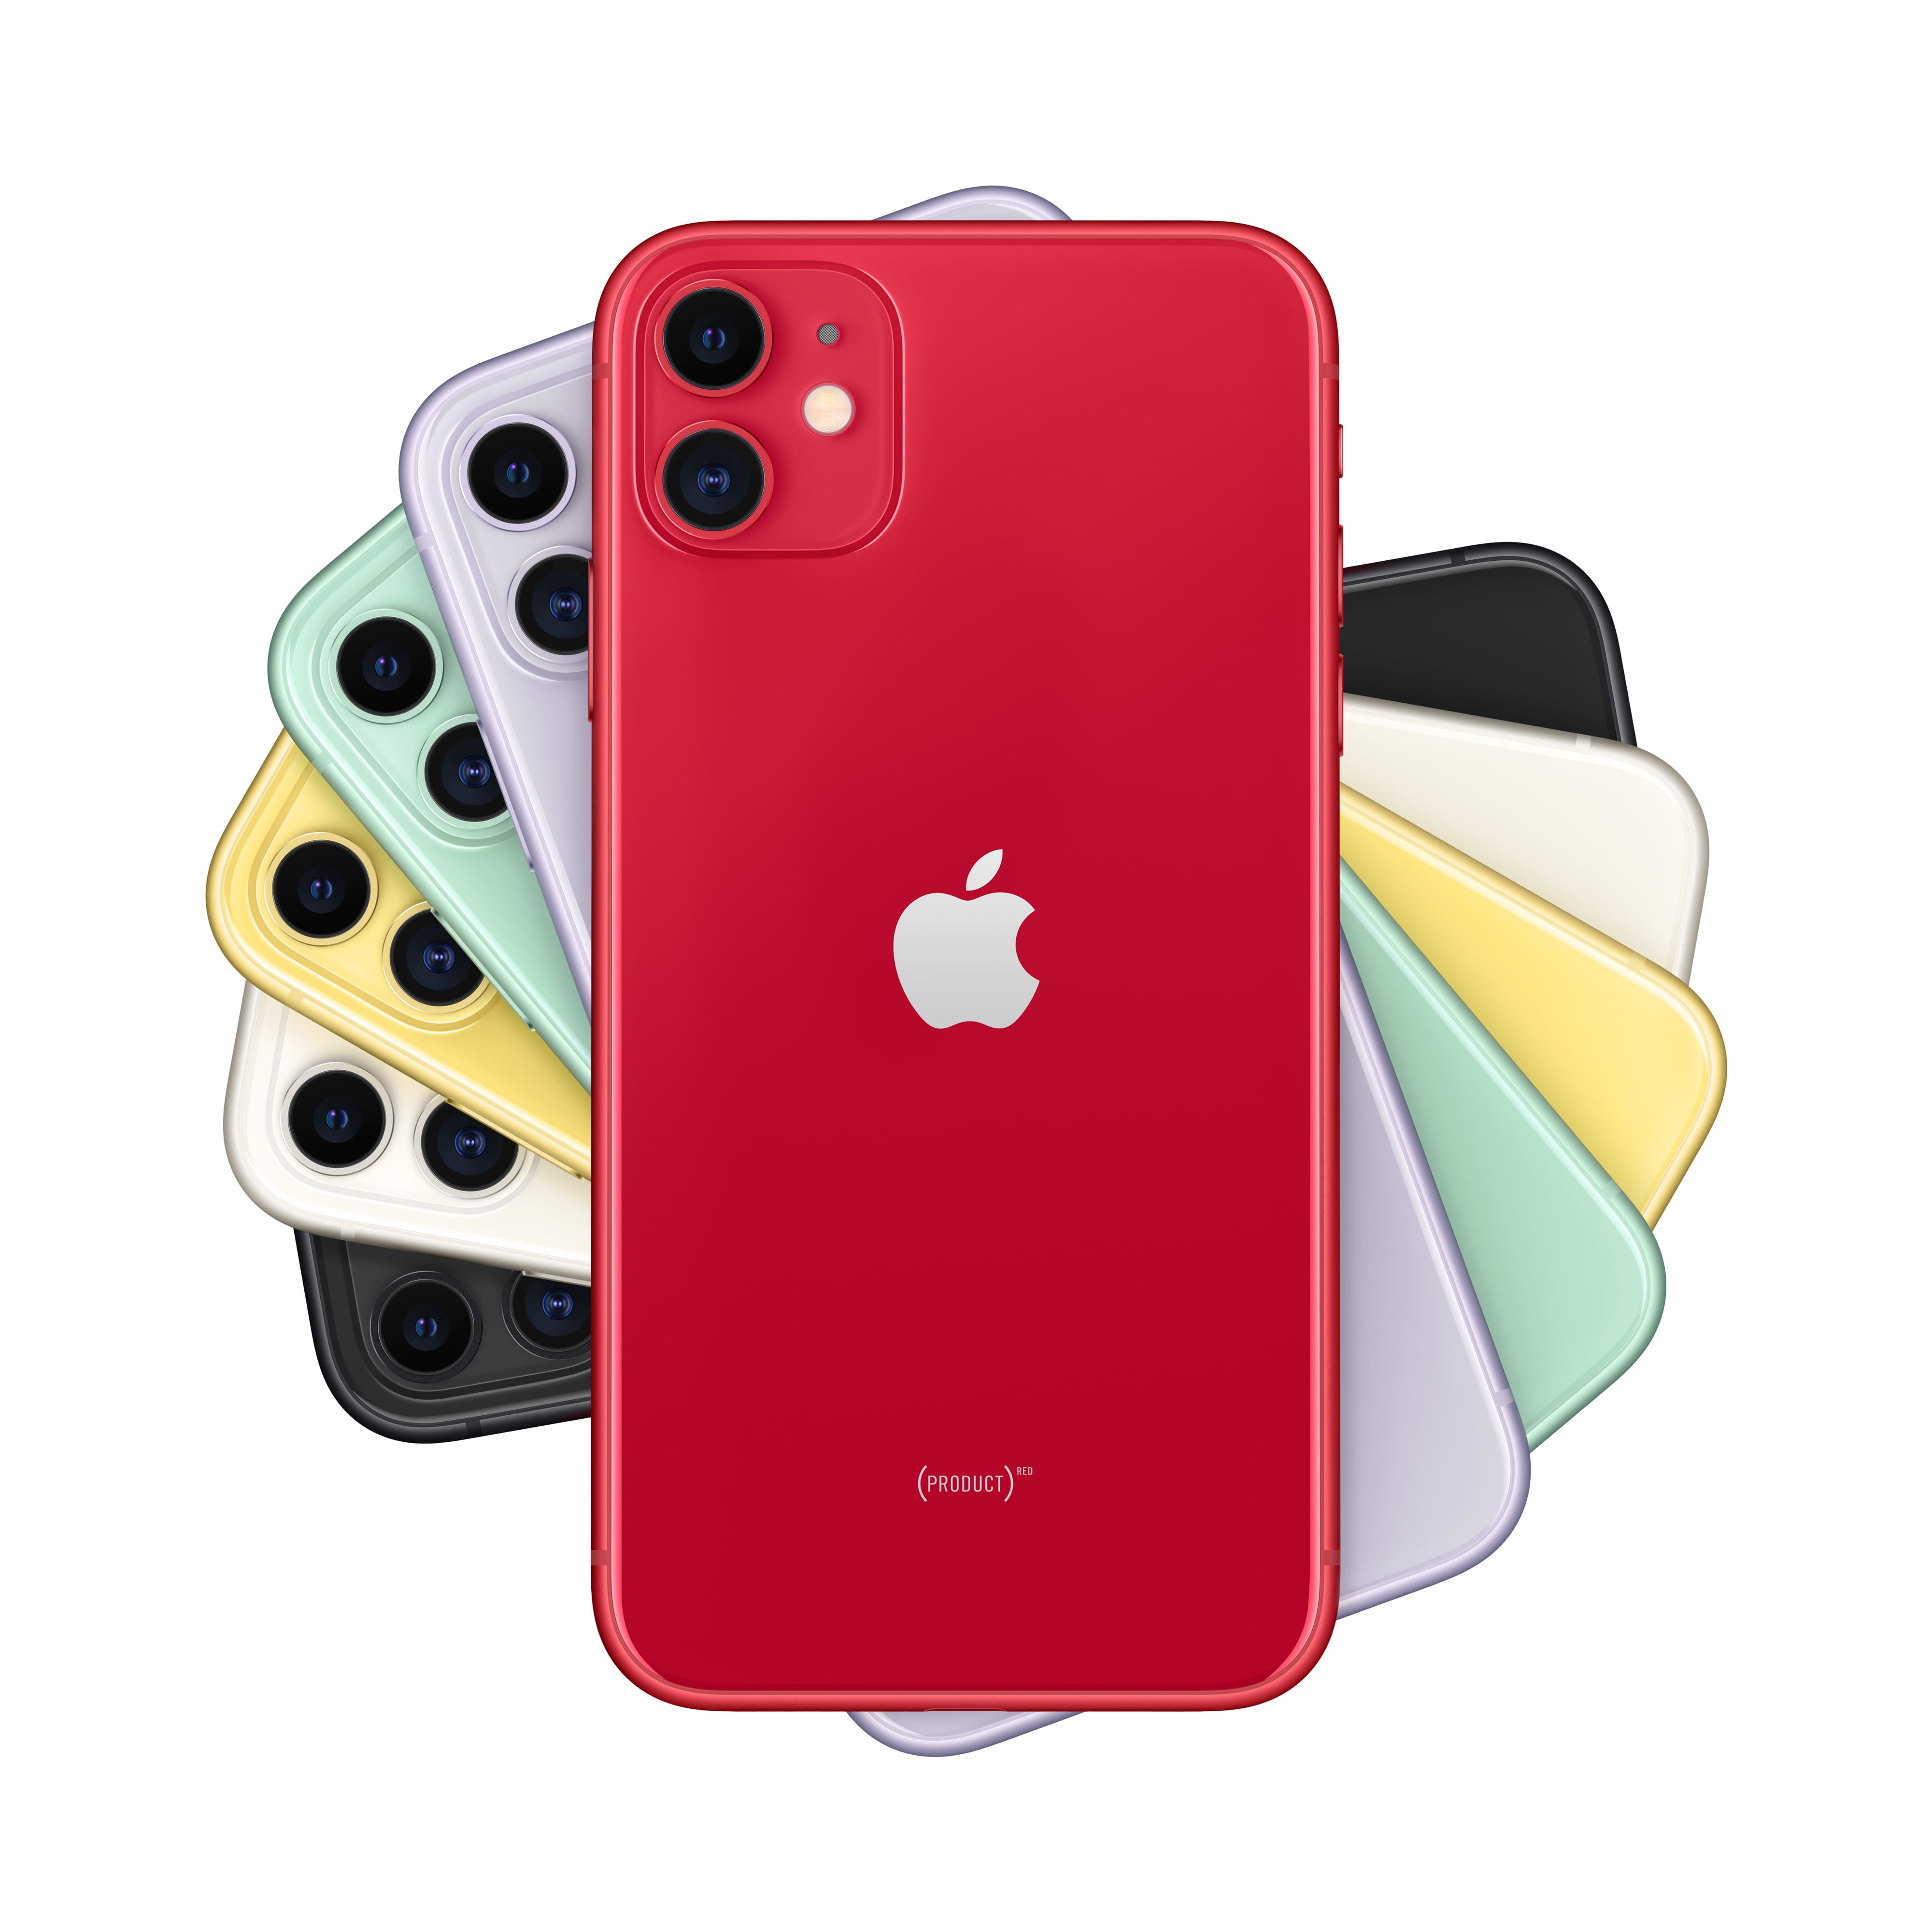 Купить iPhone 11, 128 Гб, (PRODUCT)RED в Москве в сети магазинов iShop